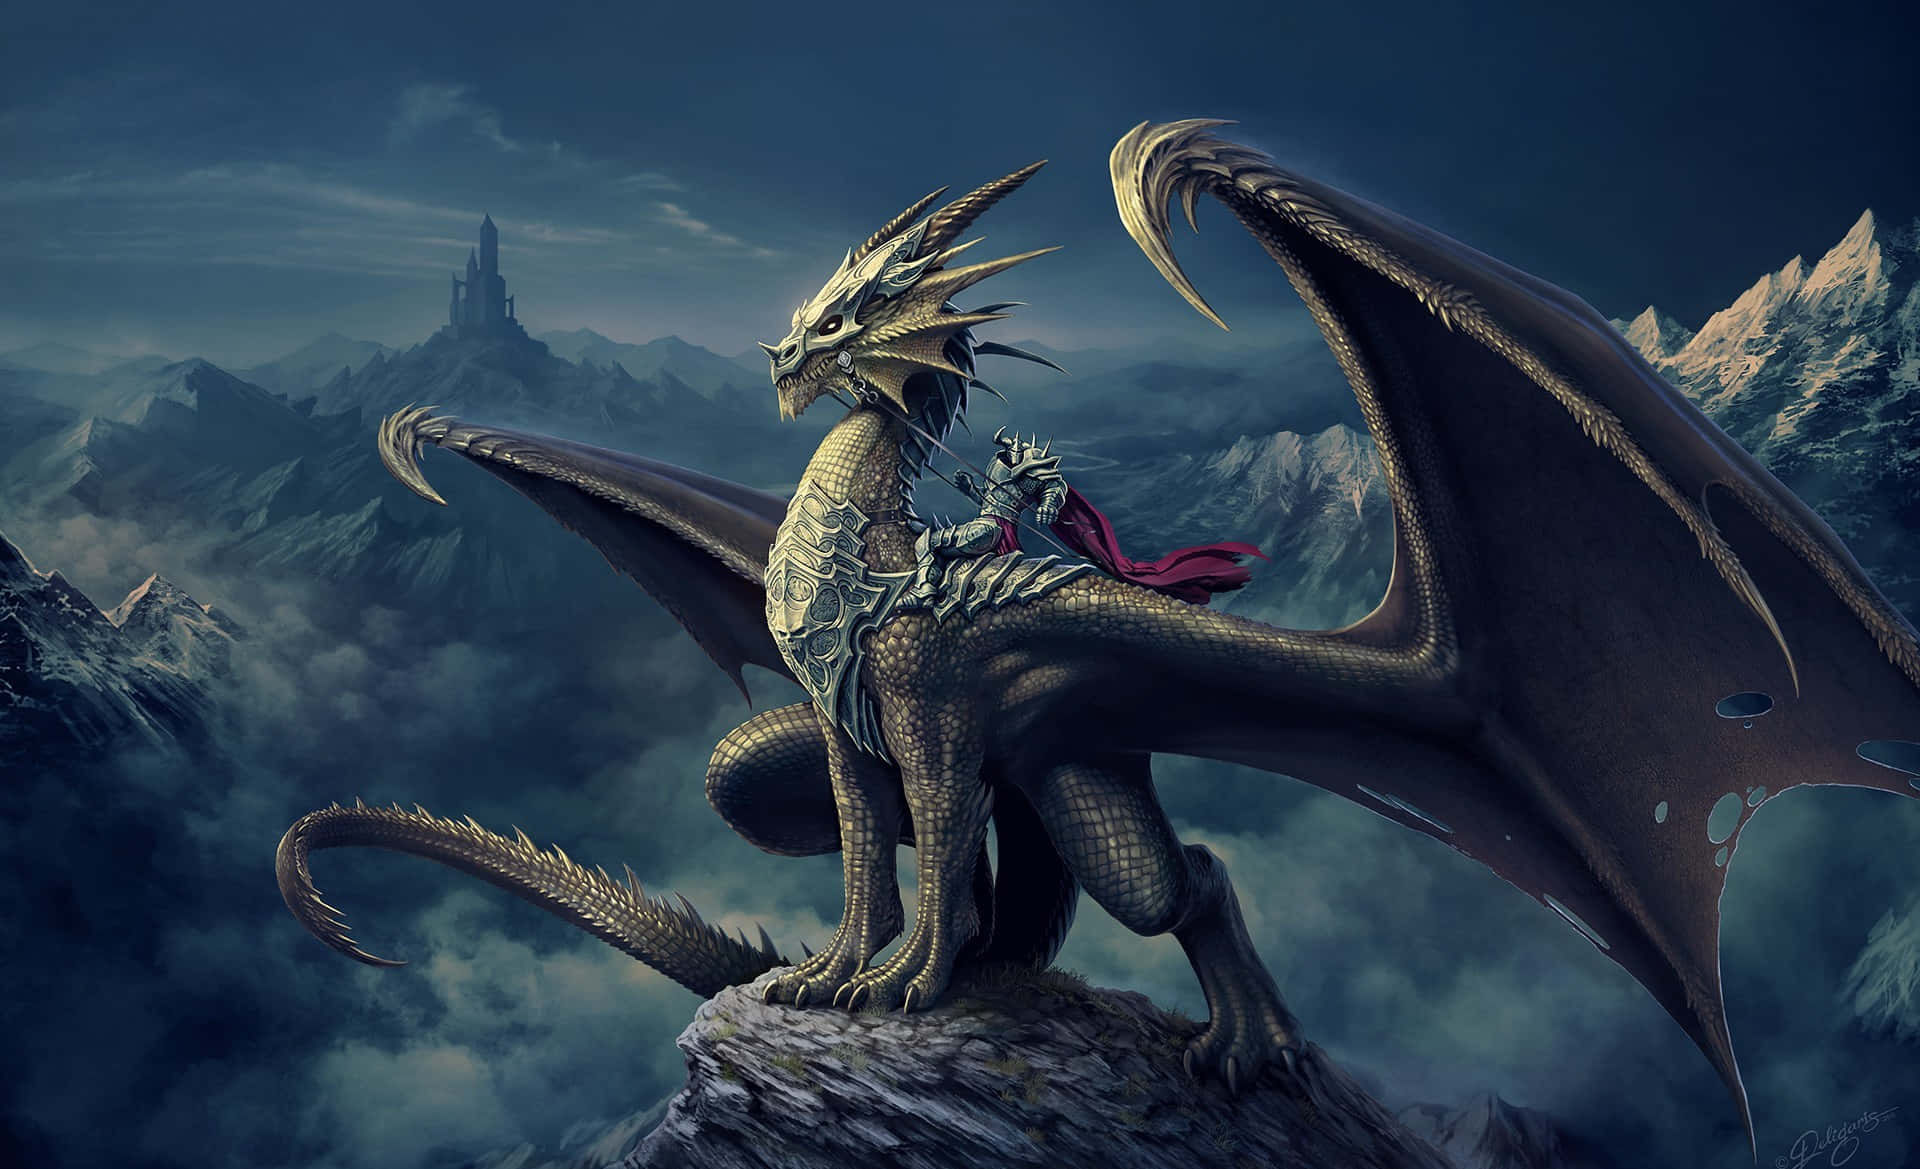 The Mystical Dragon Soars Through the Air Wallpaper